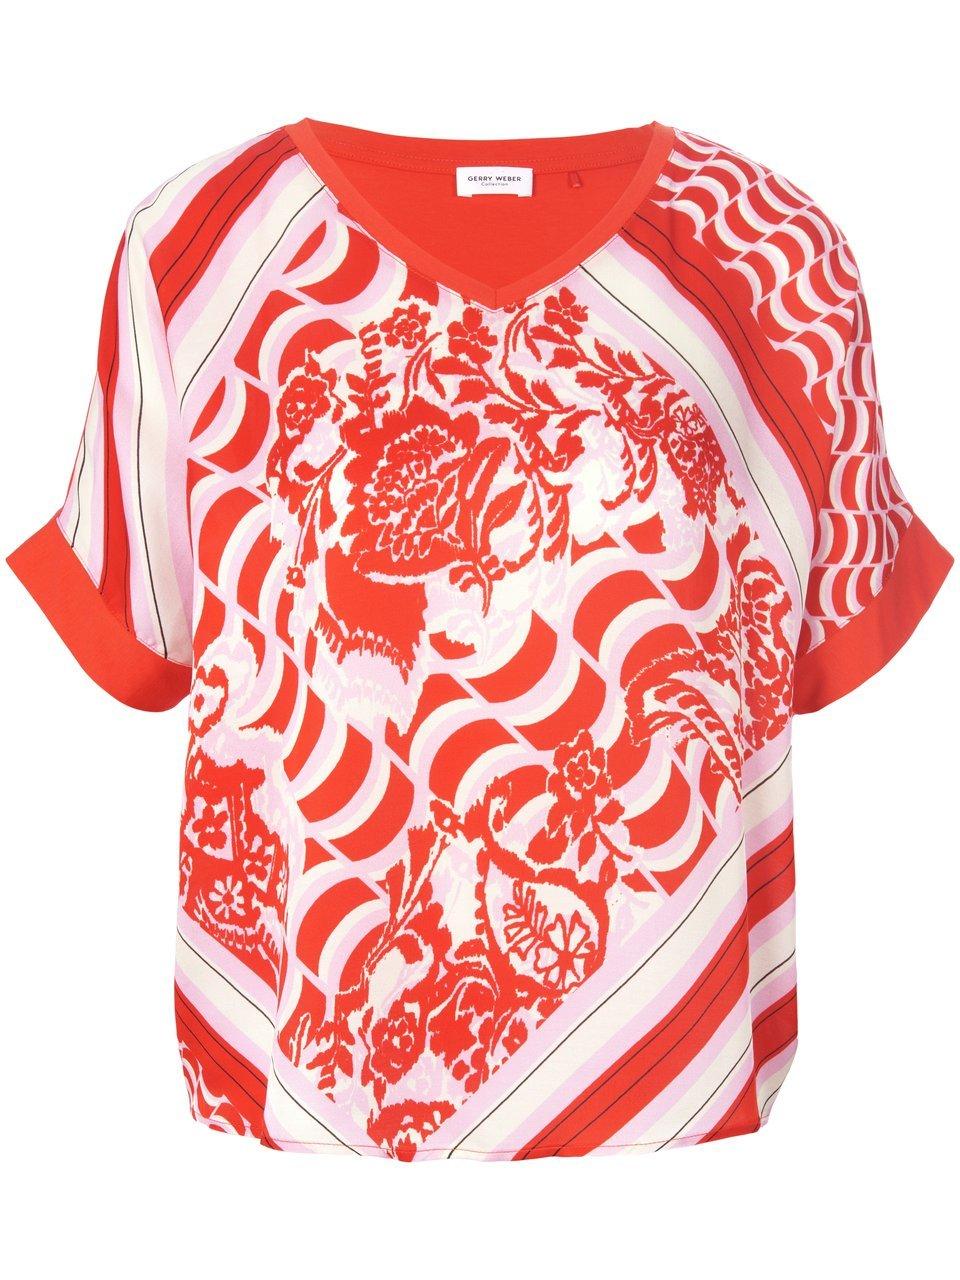 GERRY WEBER Dames Shirt met halflange mouwen Lila/Pink/Rot/Orange Druck-38